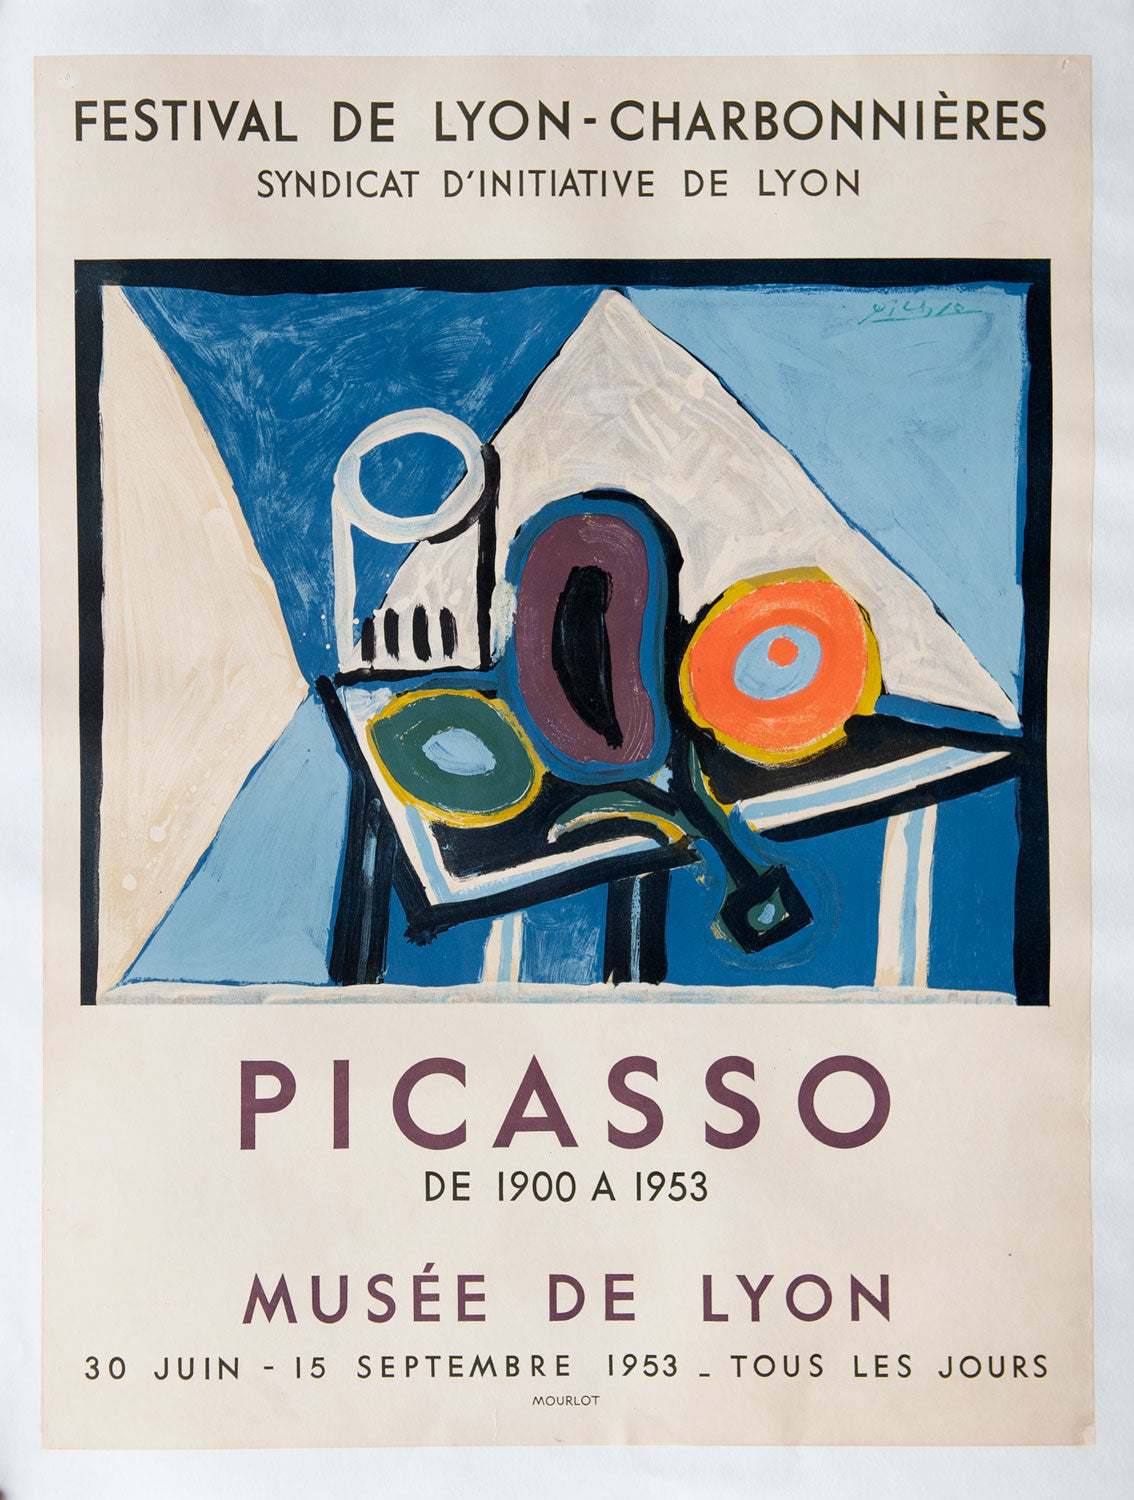 Festival de Lyon-Charbonnieres Picasso de 1900 A 1953